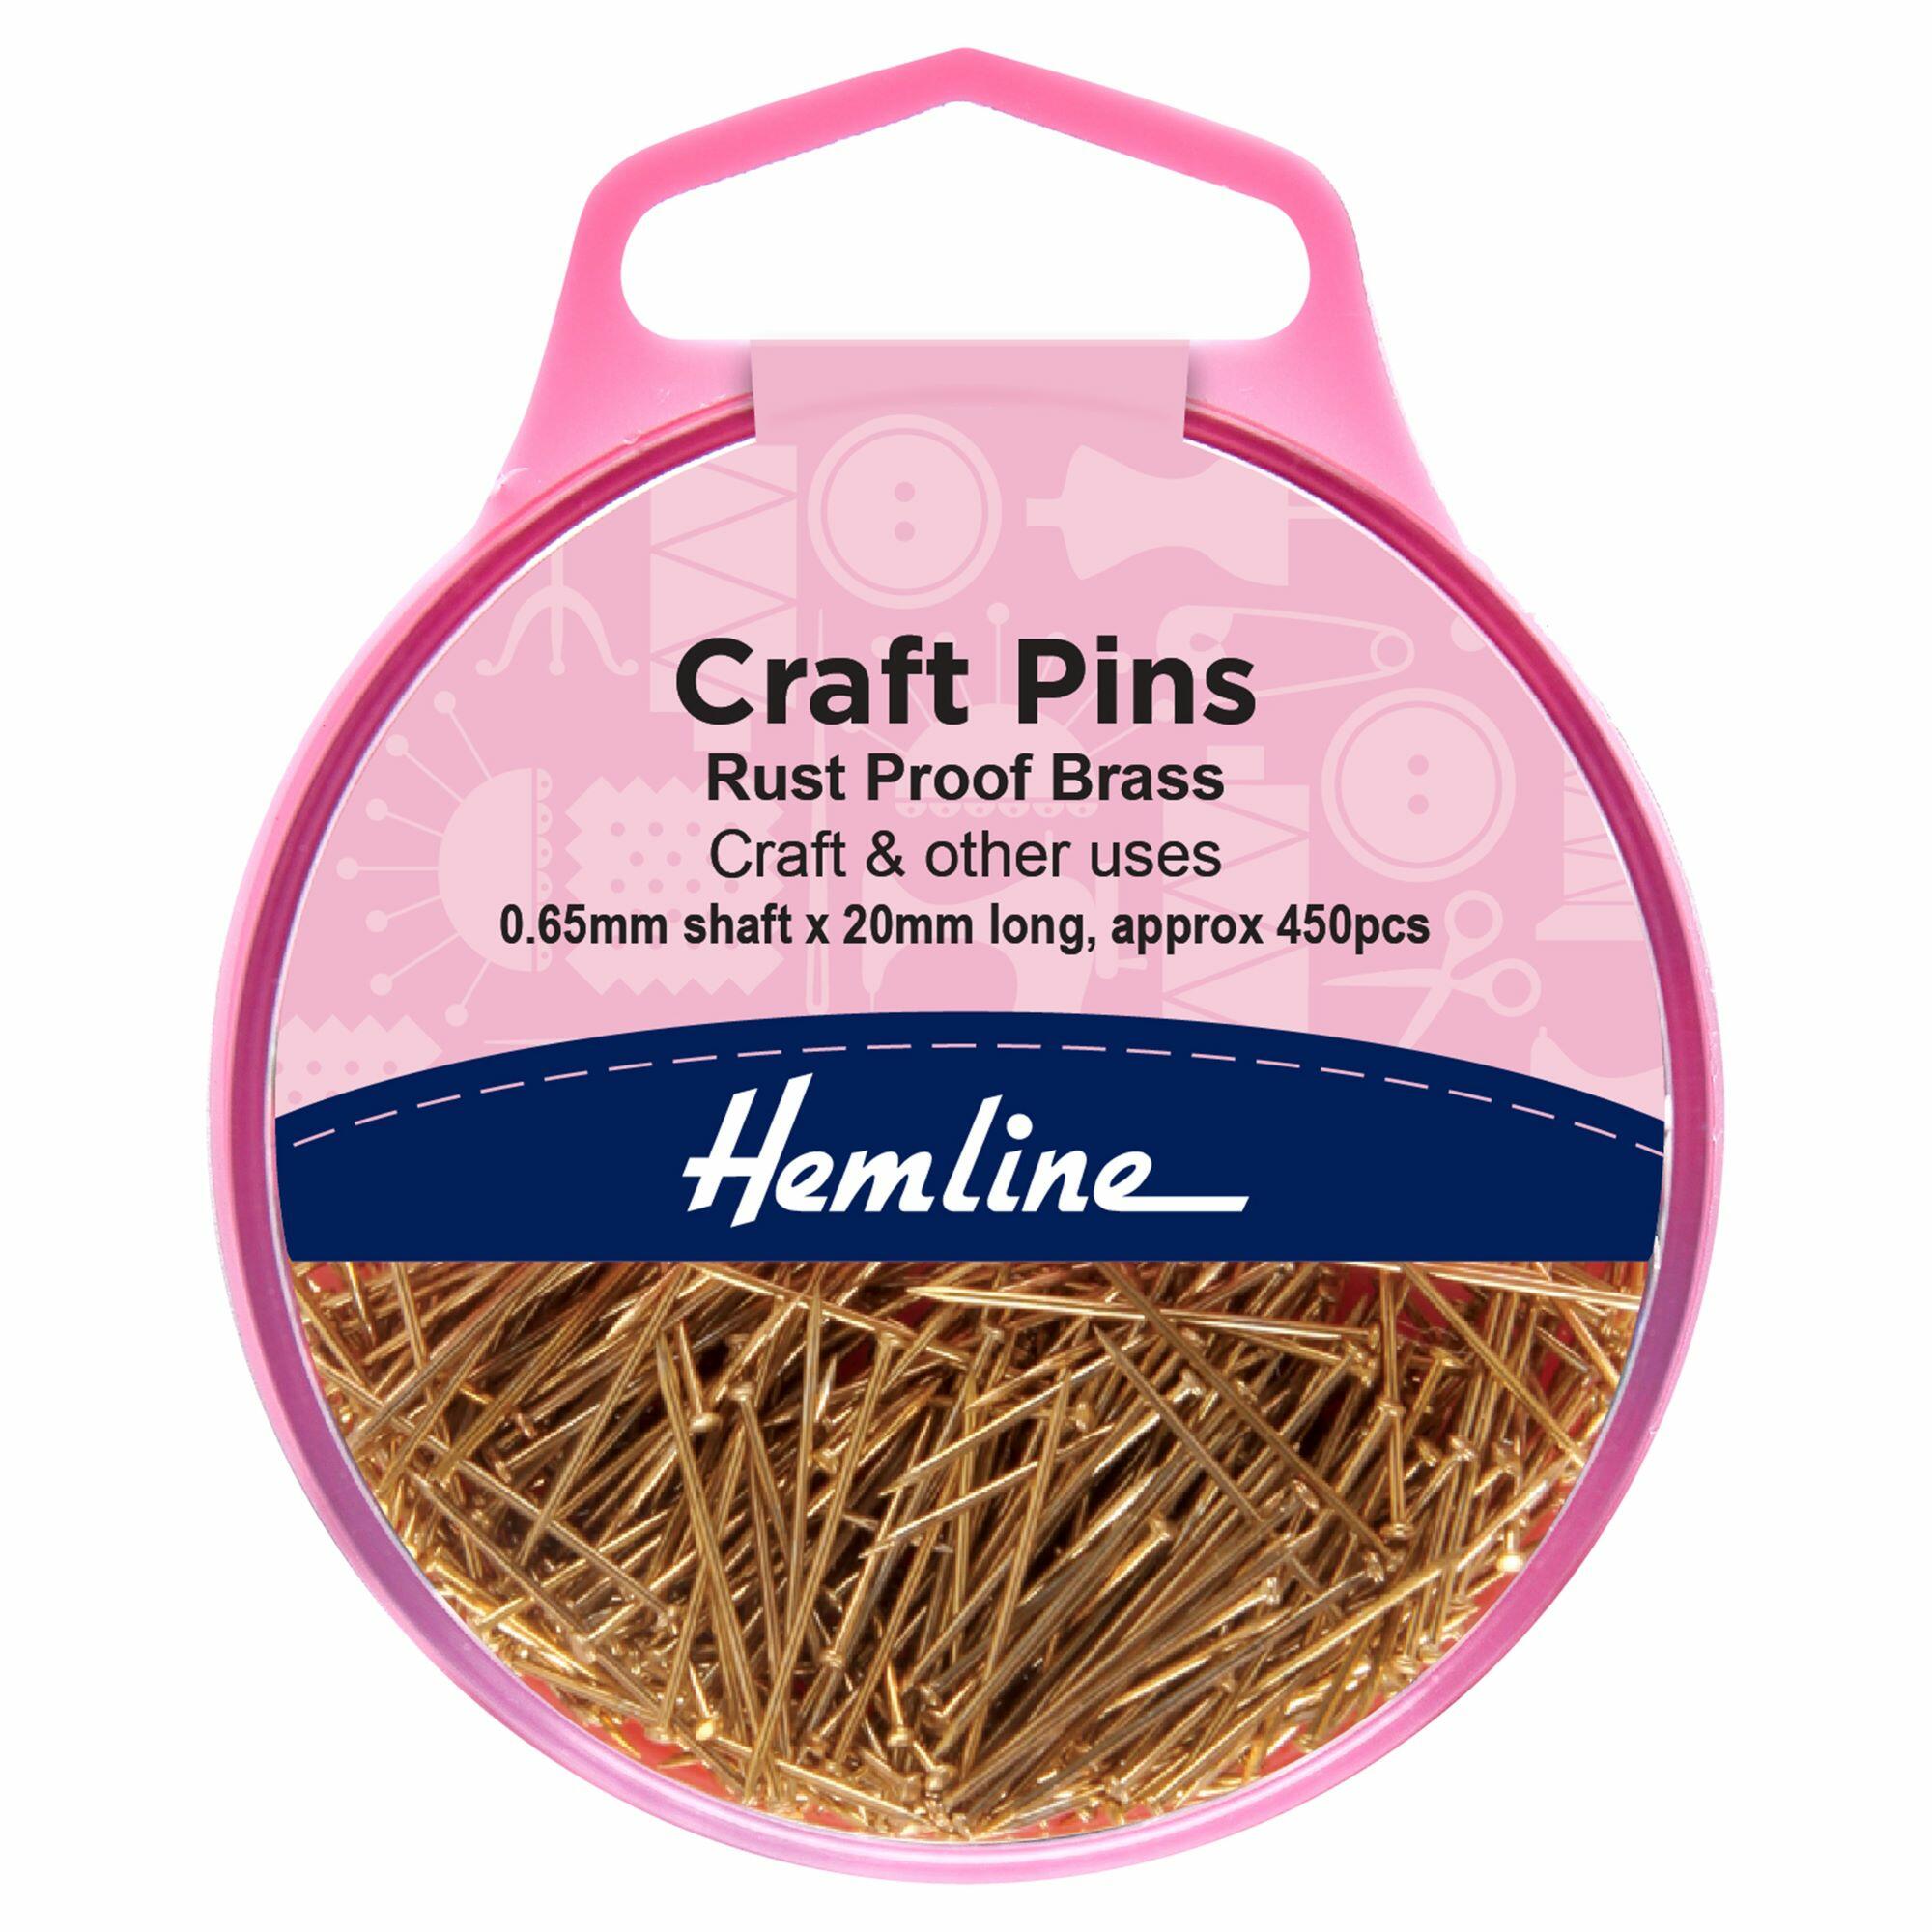 Pink Hemline storage pot containing brass pins